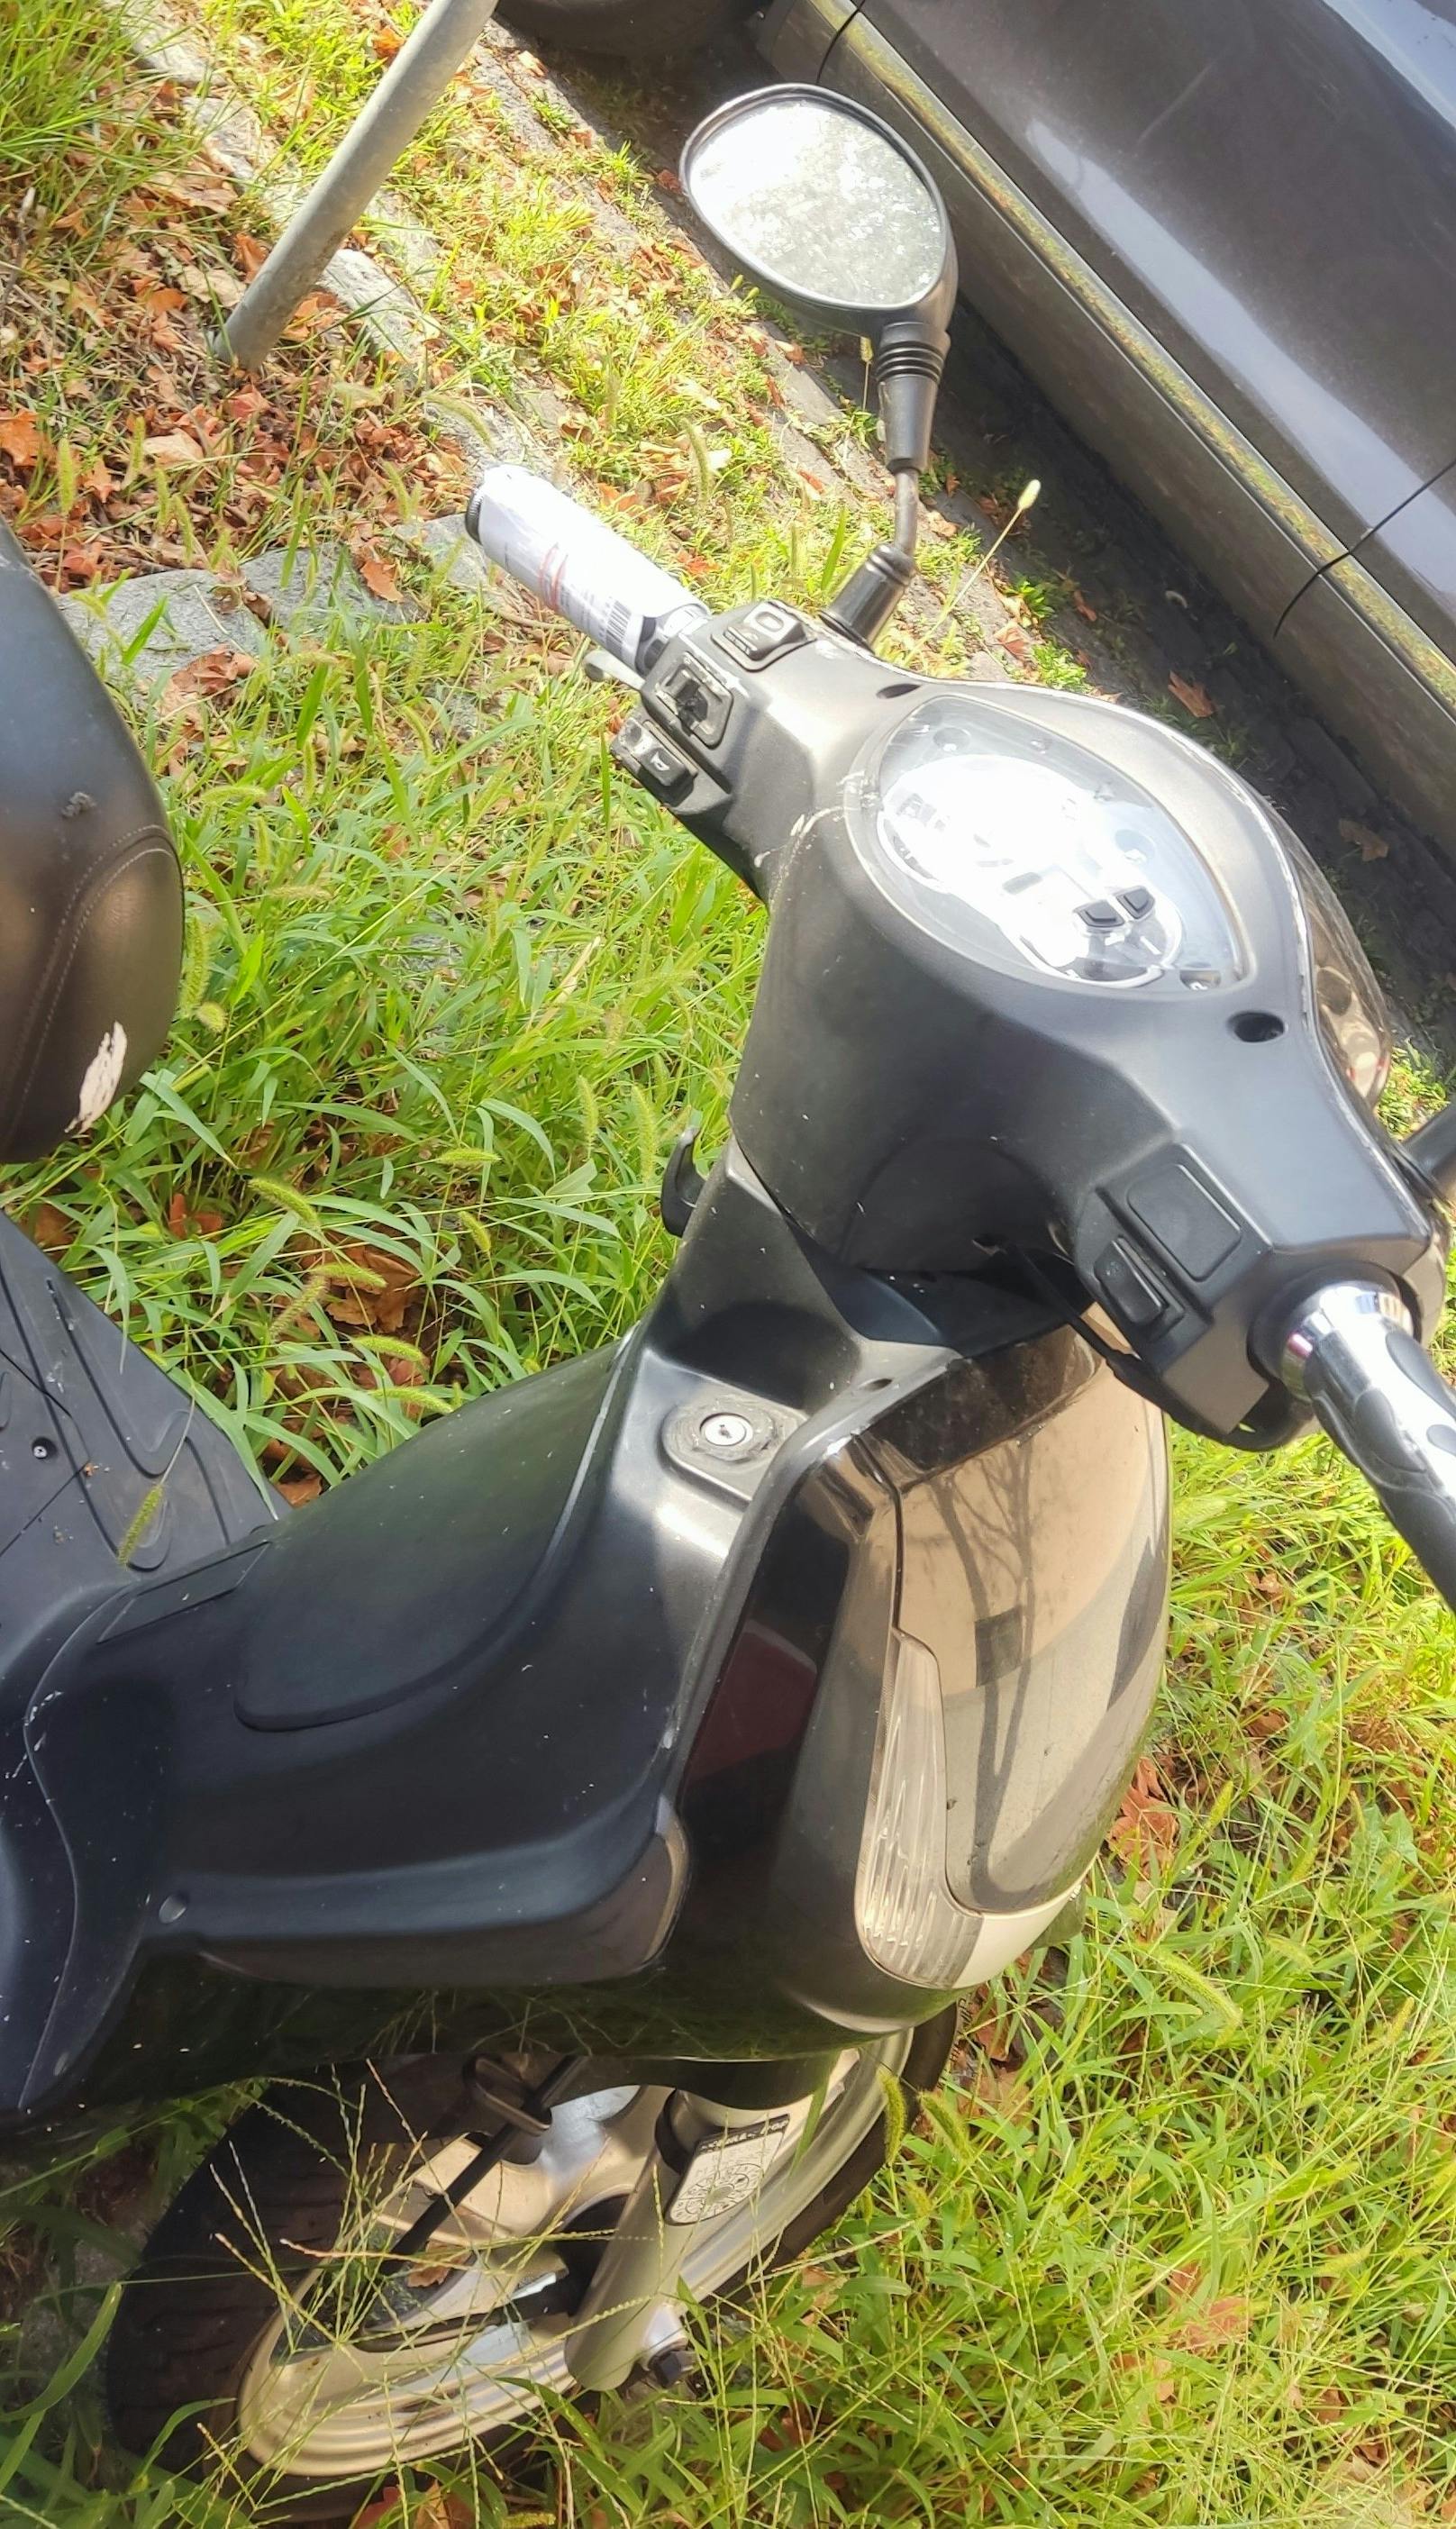 Ein Moped wurde nämlich abgestraft – obwohl der Zweiräder offensichtlich rechtskonform abgestellt wurde.